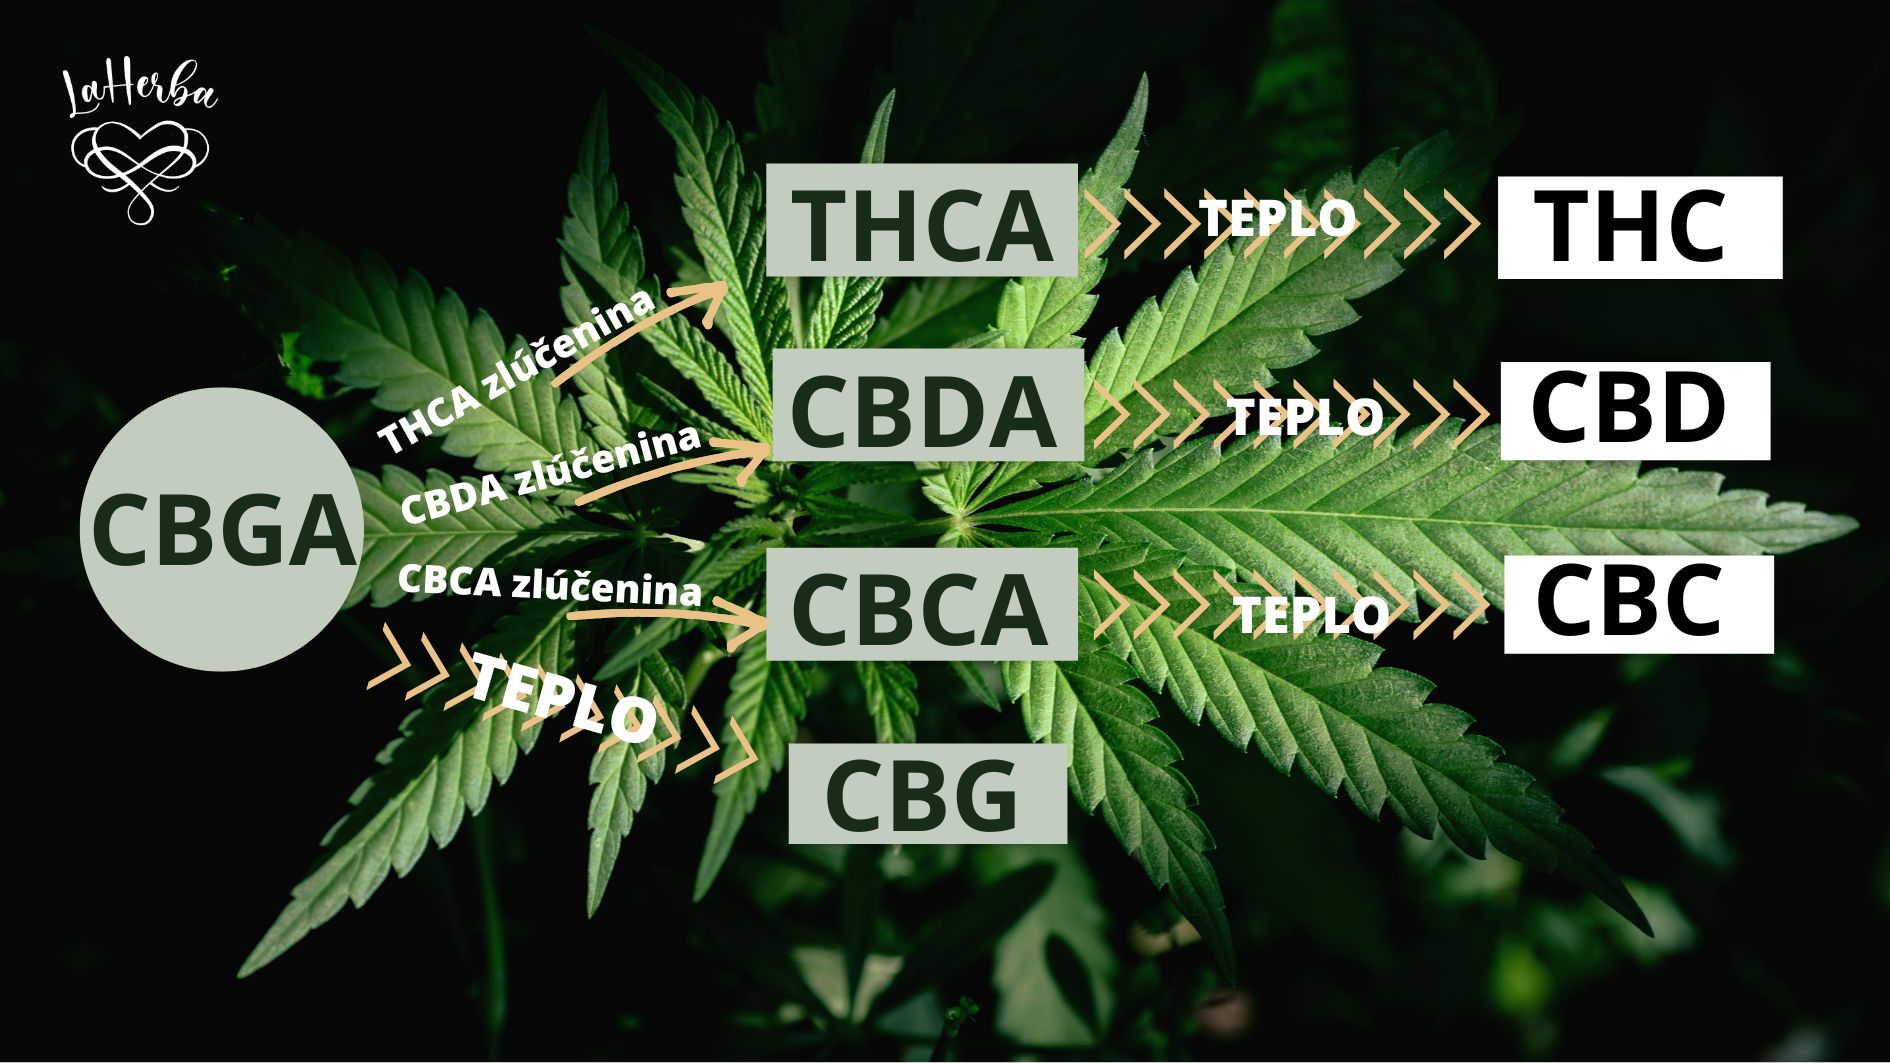 CBGA transformacia na THCA CBDA CBCA a CBG